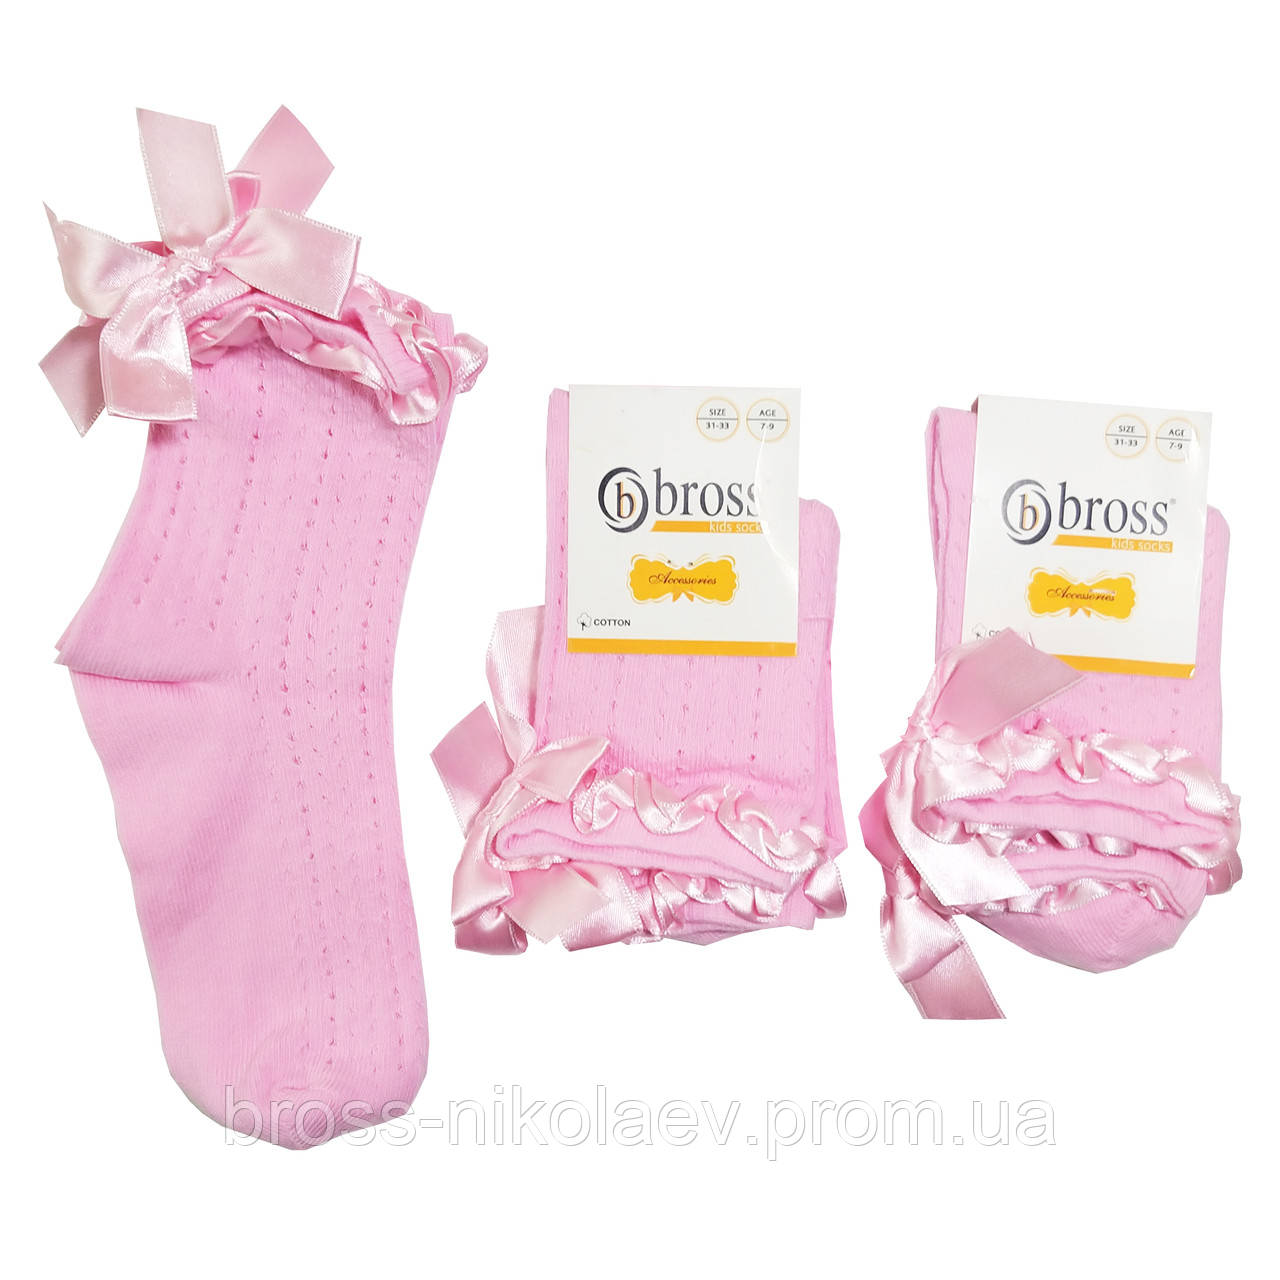 Високі дитячі шкарпетки святкові однотонні ажурні демі шкарпетки з бантиками для дівчинки BROSS